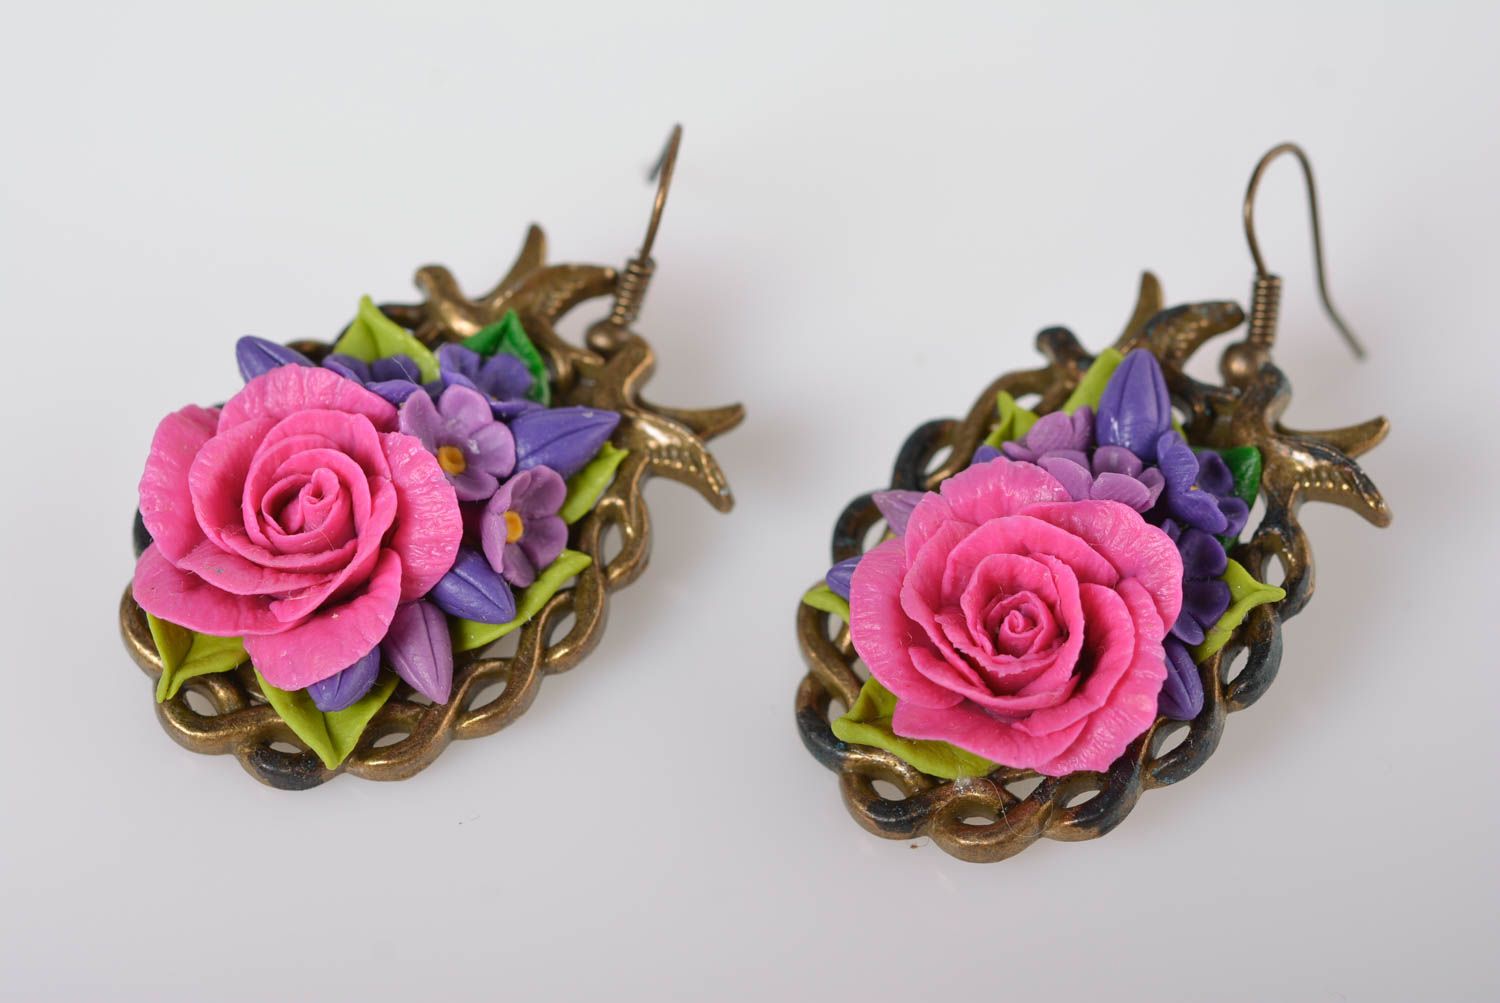 Handmade bijouterie porcelain earrings molded flower earrings stylish jewelry photo 2